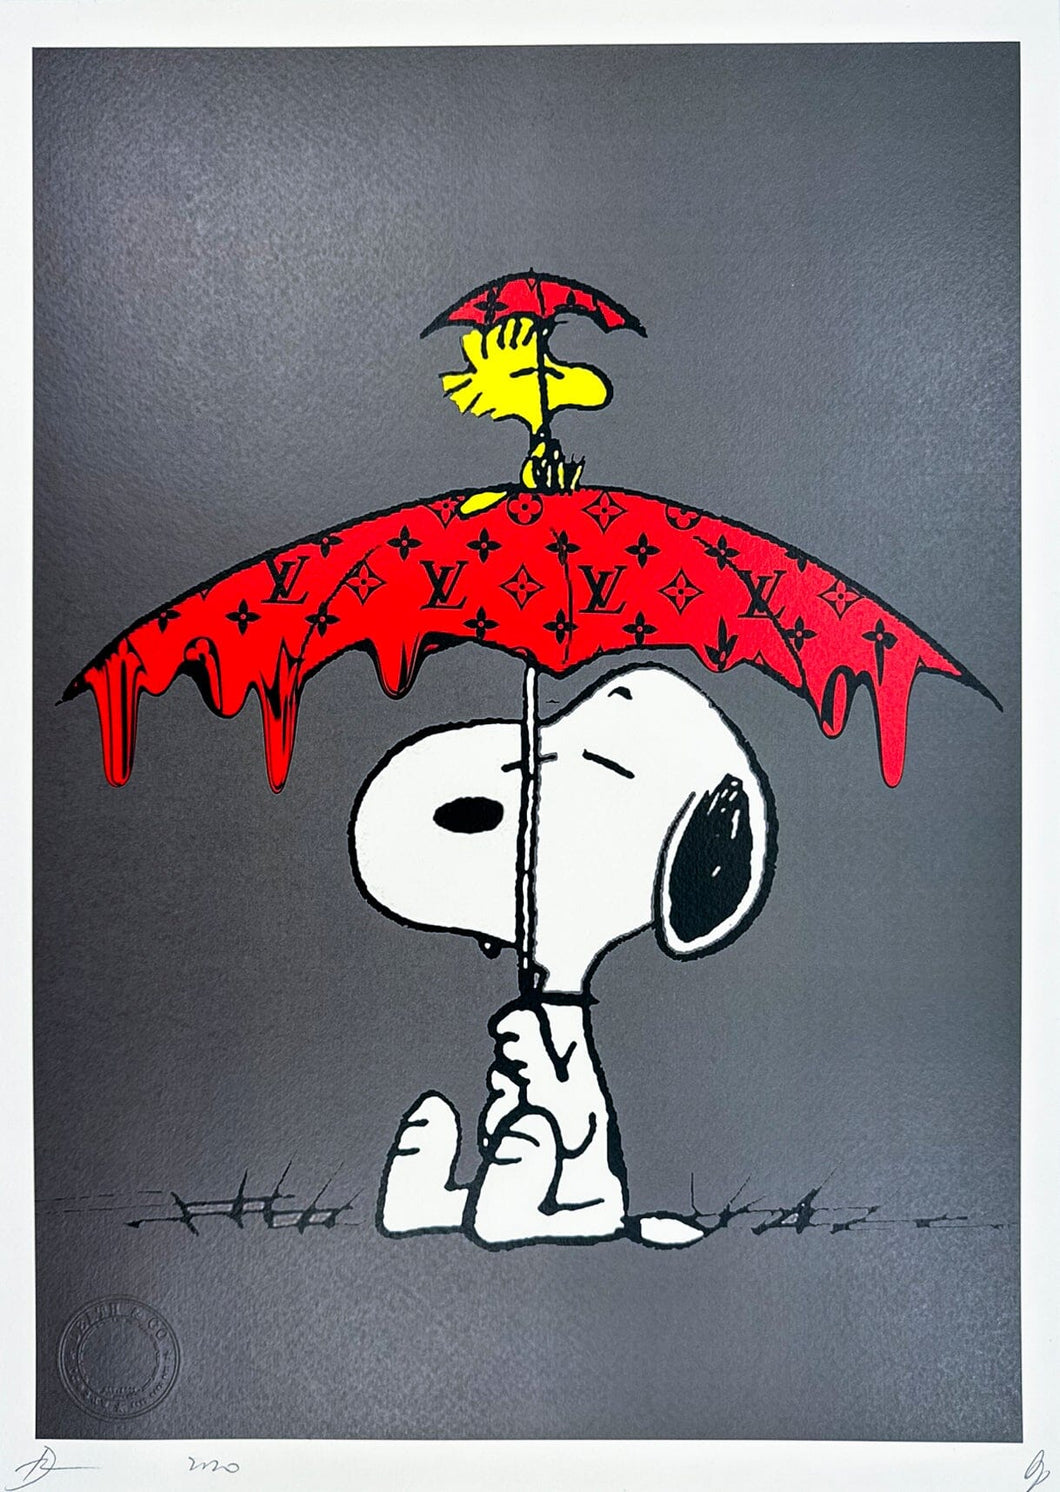 Snoopy LV Umbrella Print Death NYC